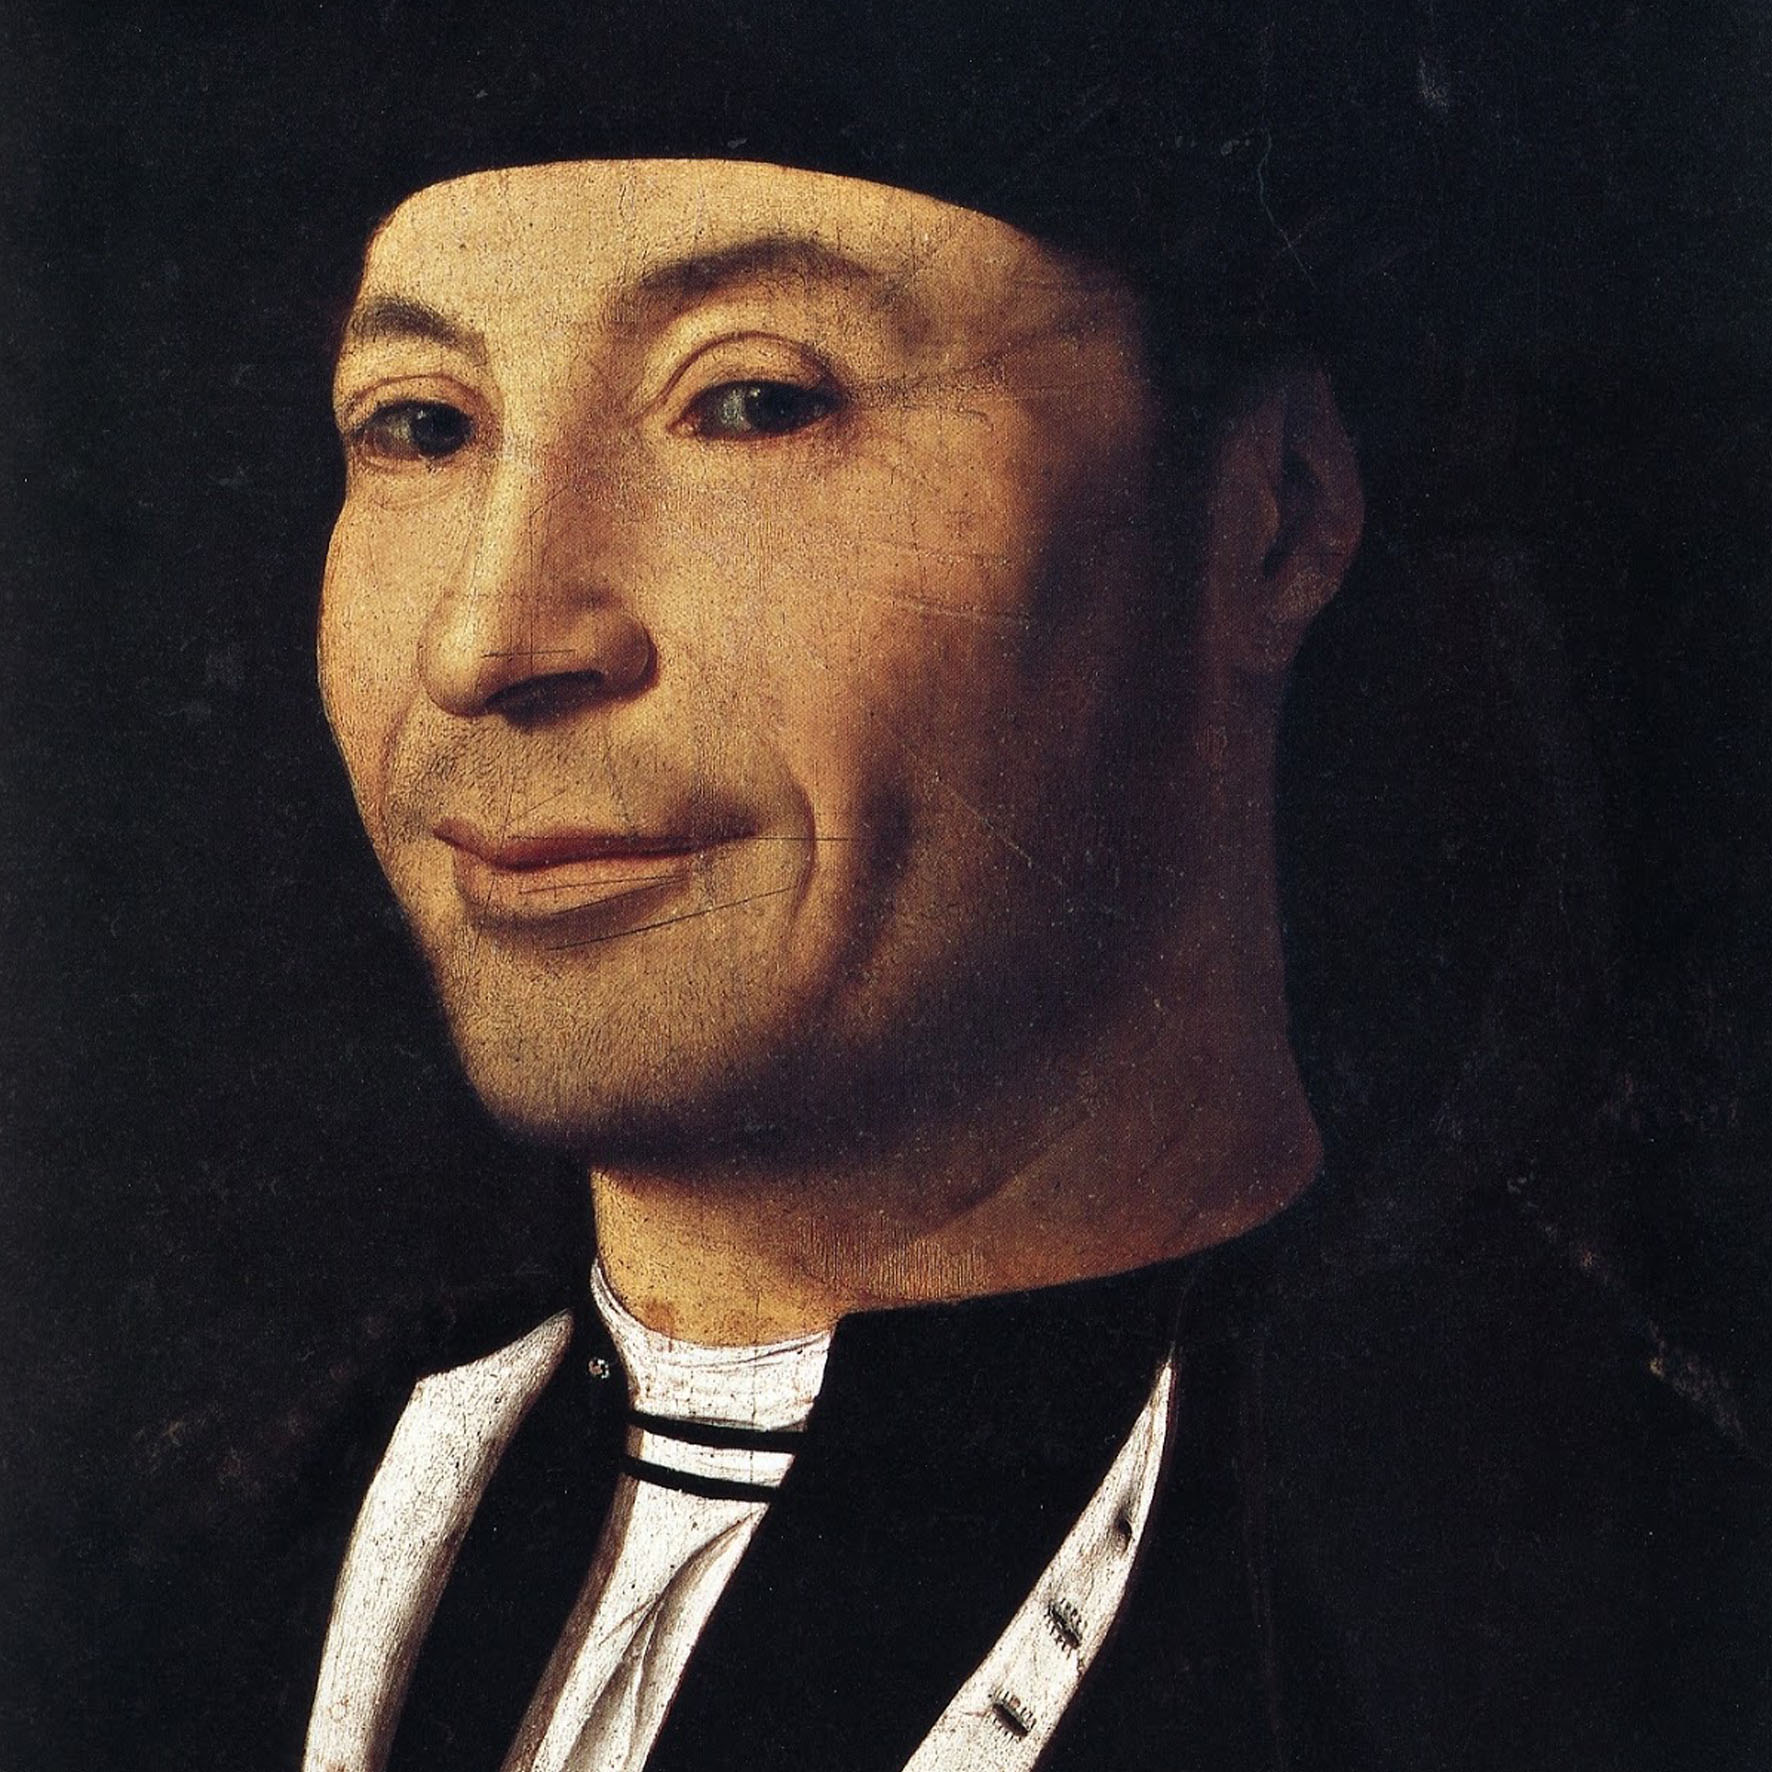 Two portraits by Antonello da Messina